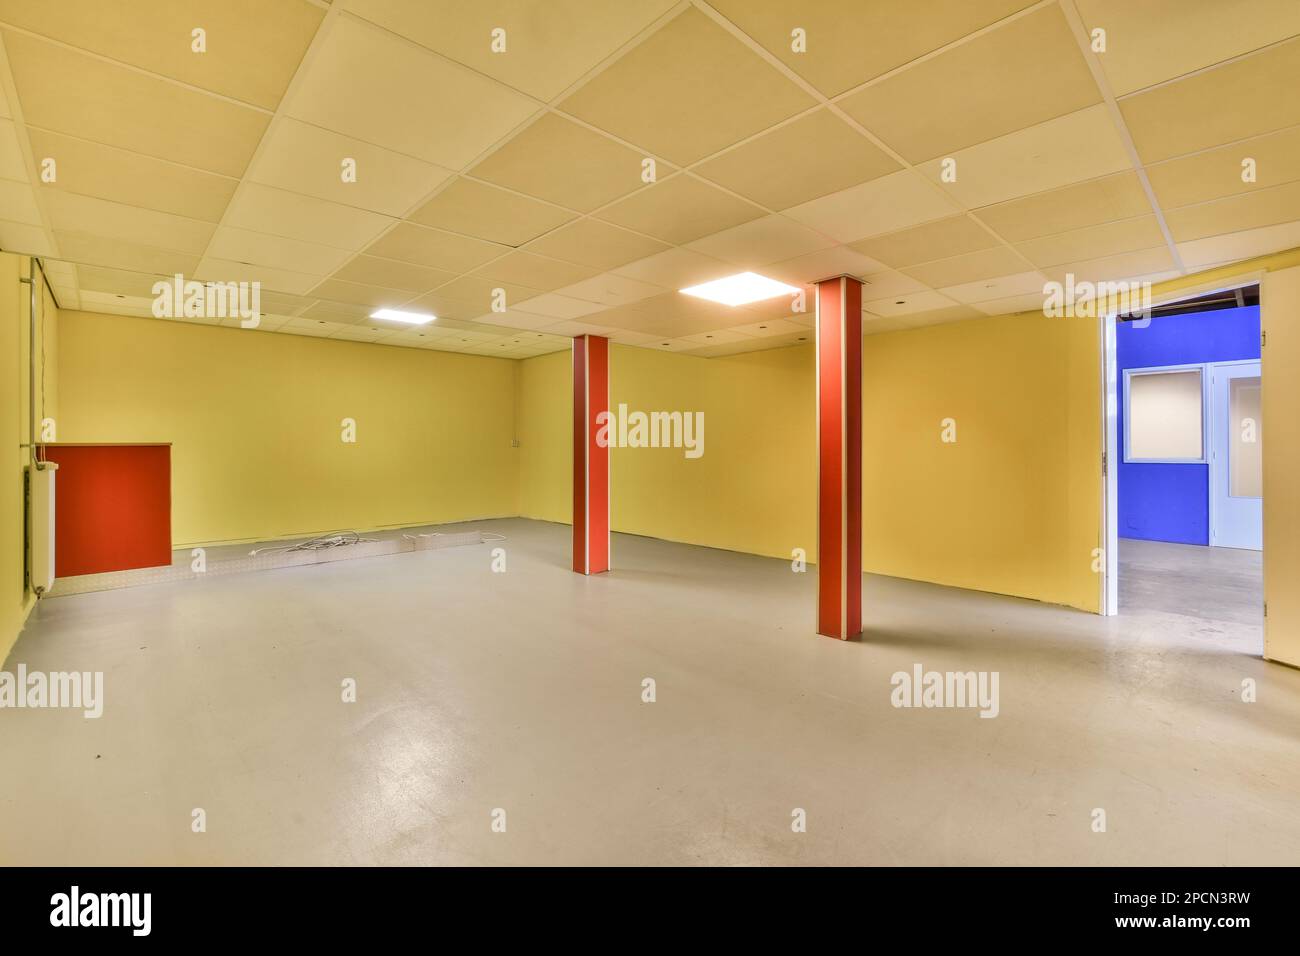 Ein leerer Raum mit gelben Wänden und weißen Deckenfliesen auf dem Boden, es gibt eine rote Tür in der Ecke Stockfoto